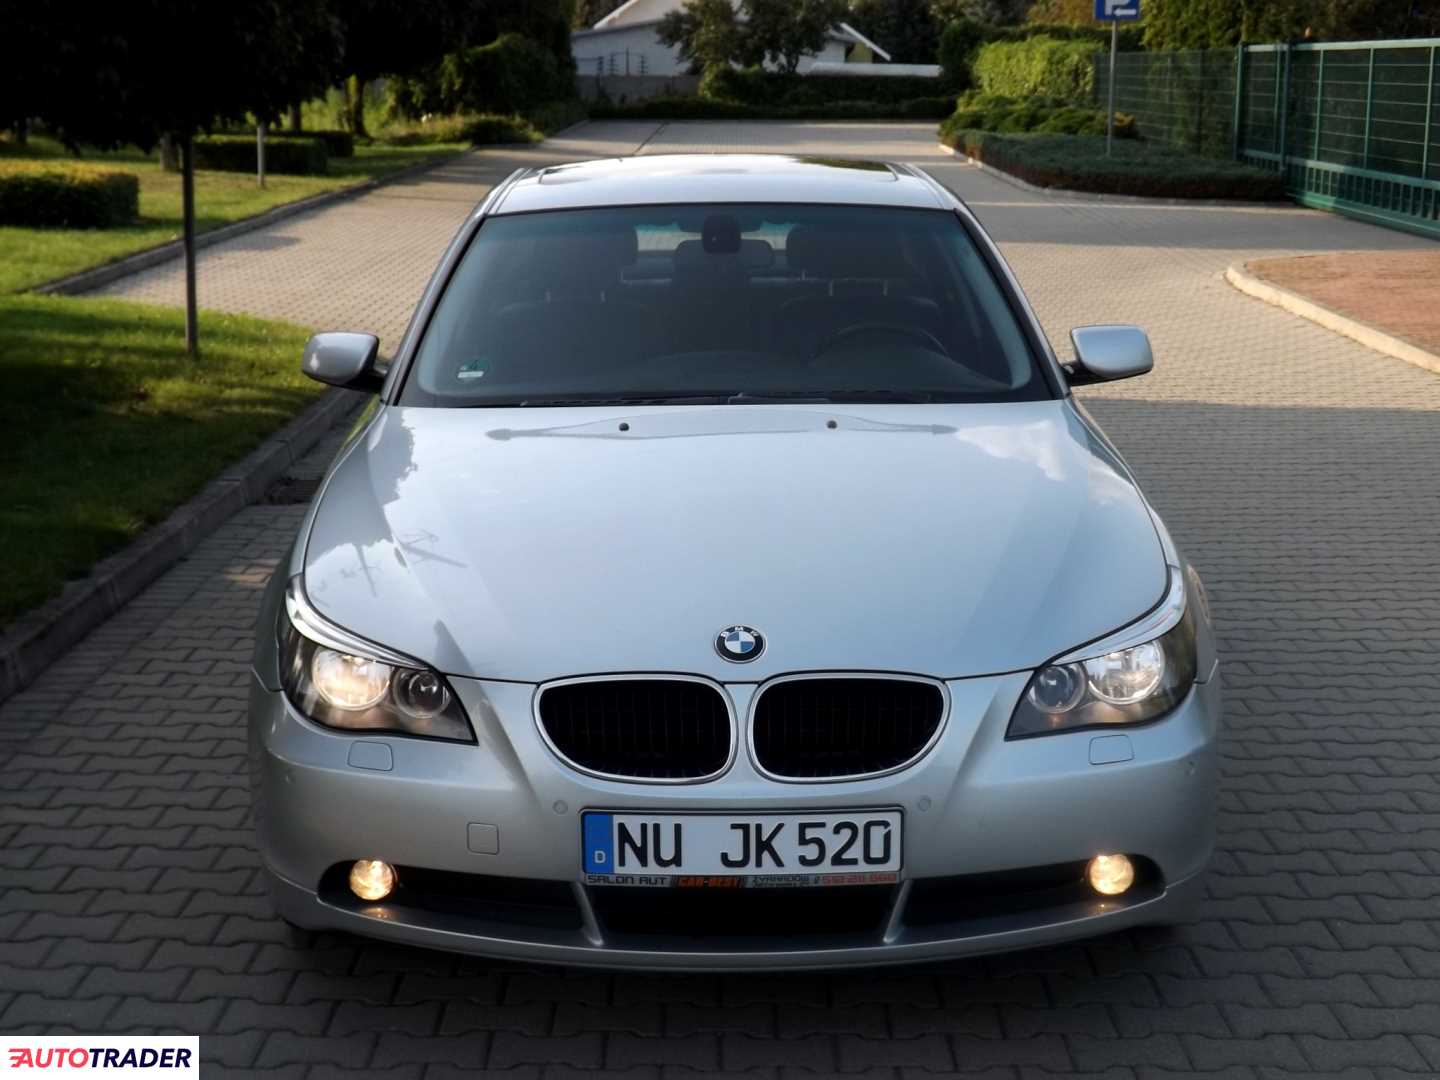 BMW 520 2.2 benzyna 170 KM 2004r. (Żyrardów) Autotrader.pl